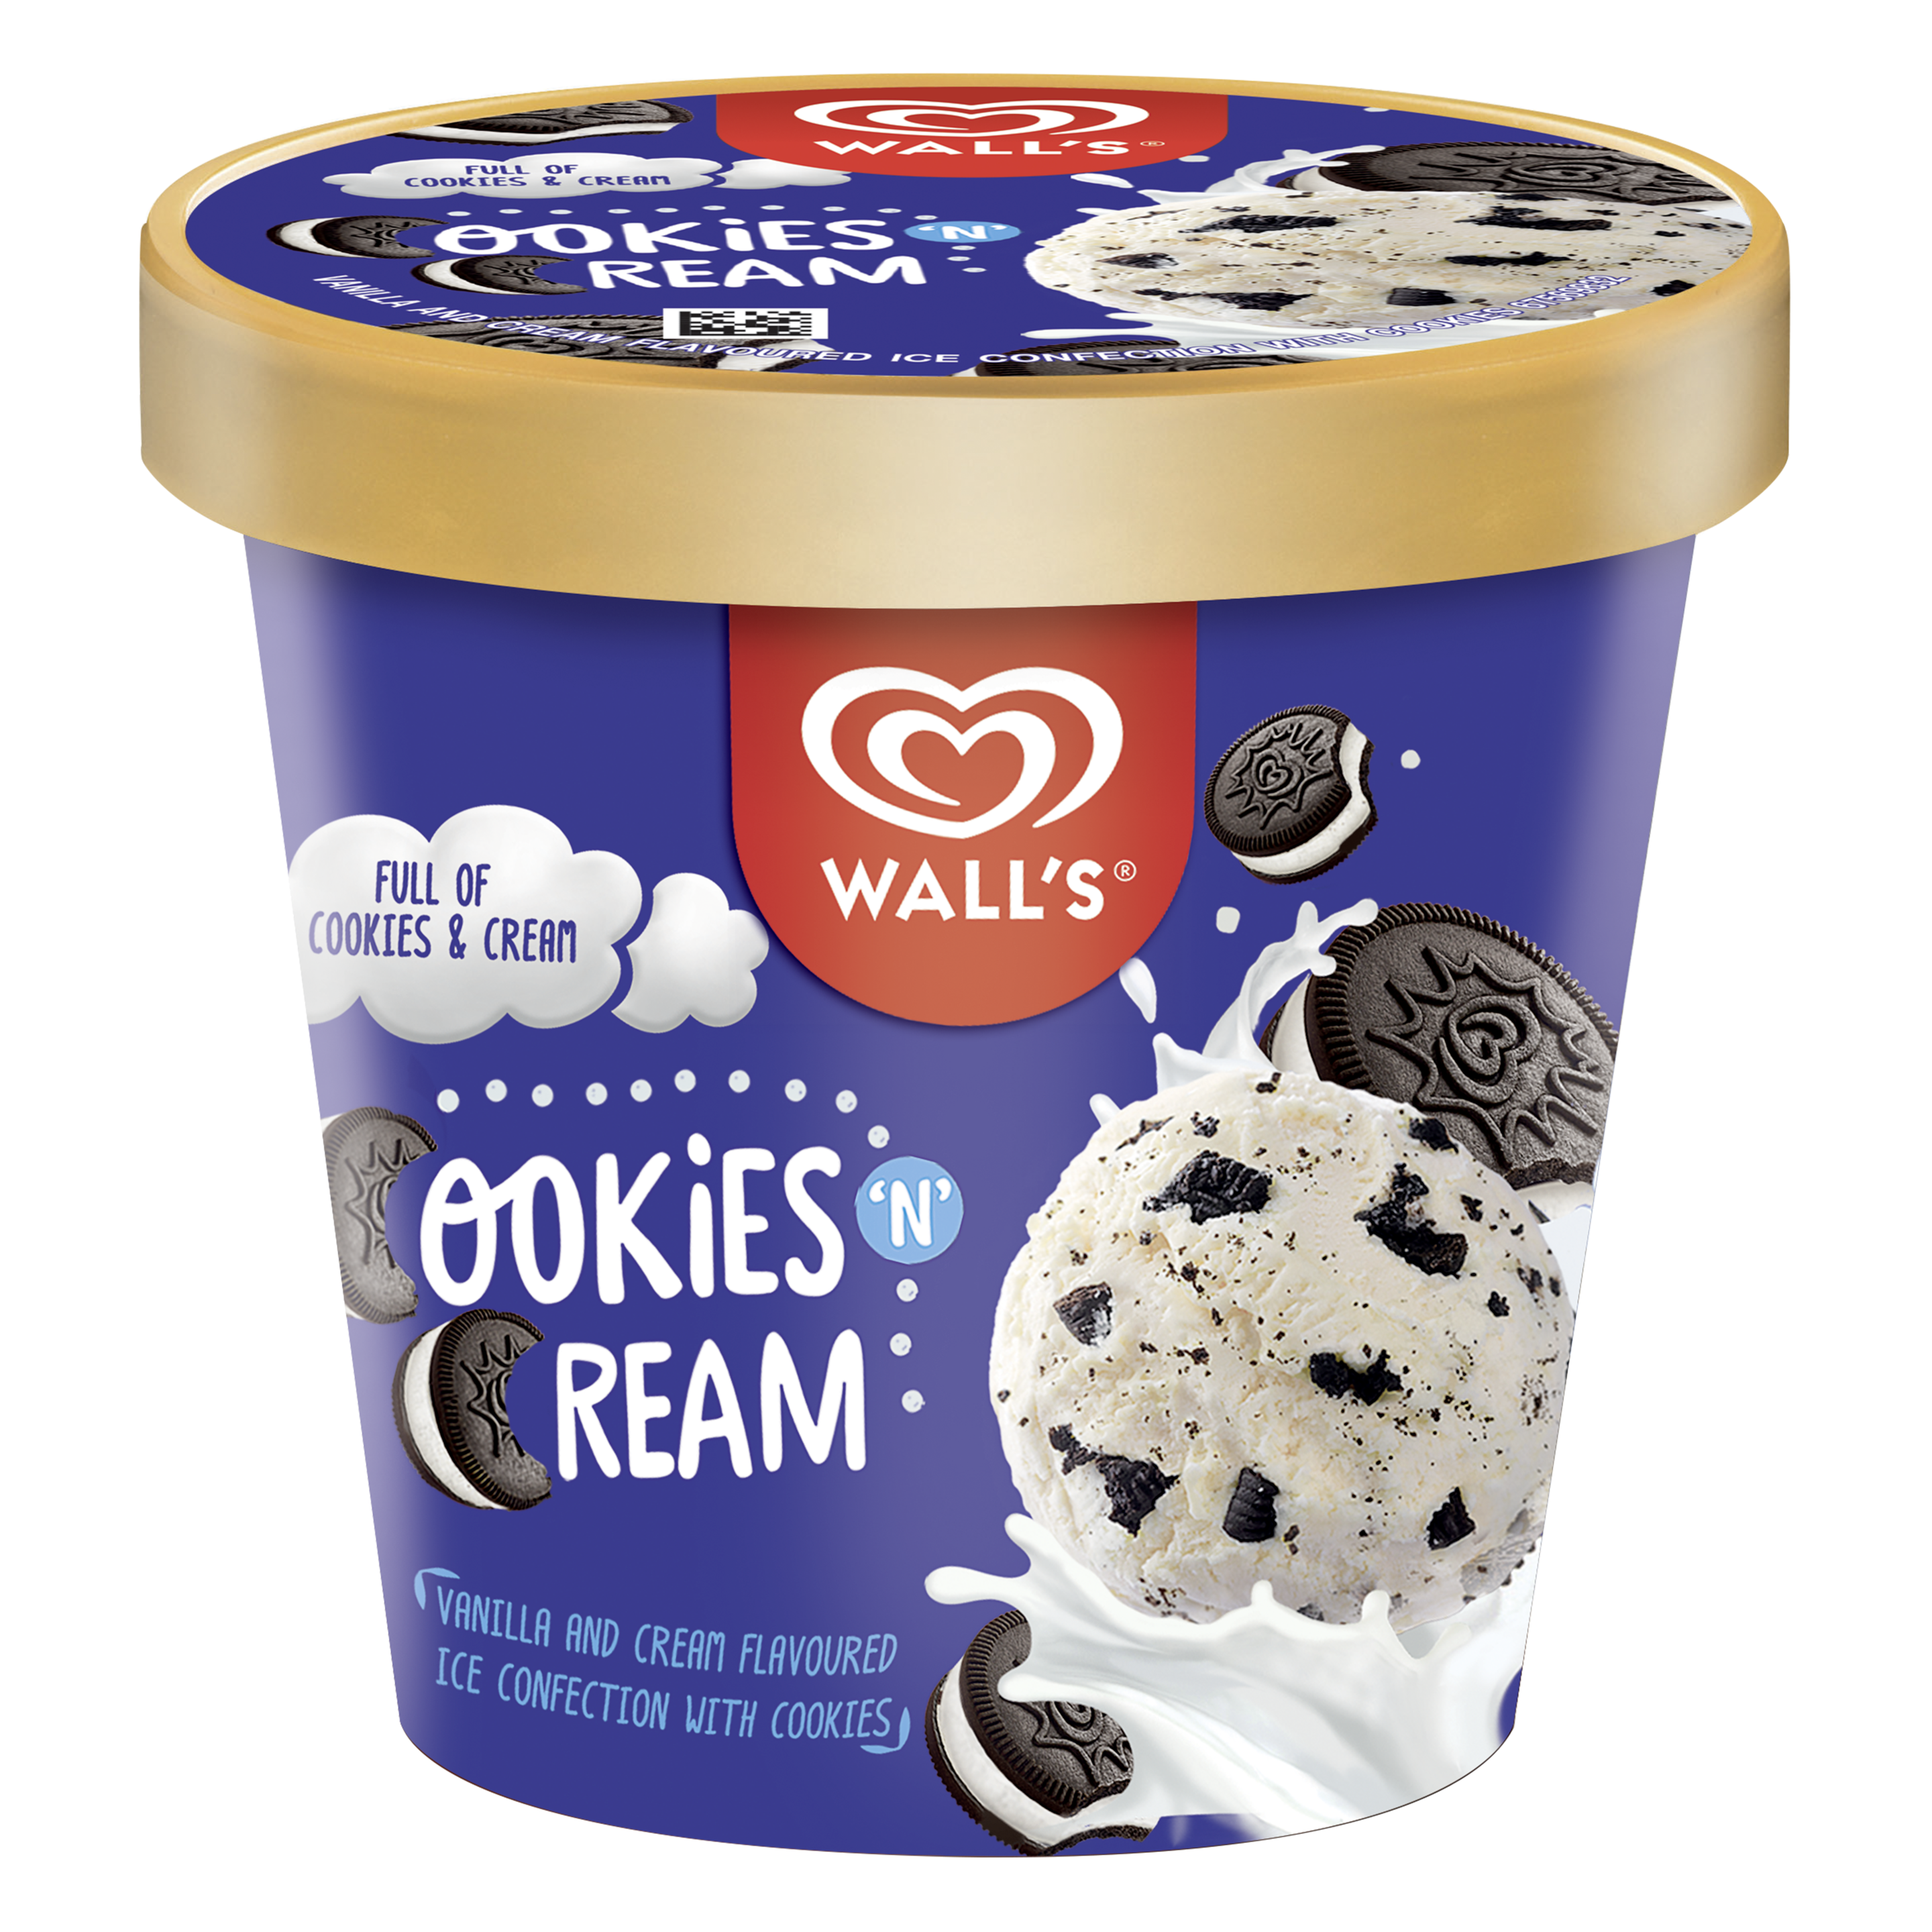 Wall's Cookies 'N' Cream